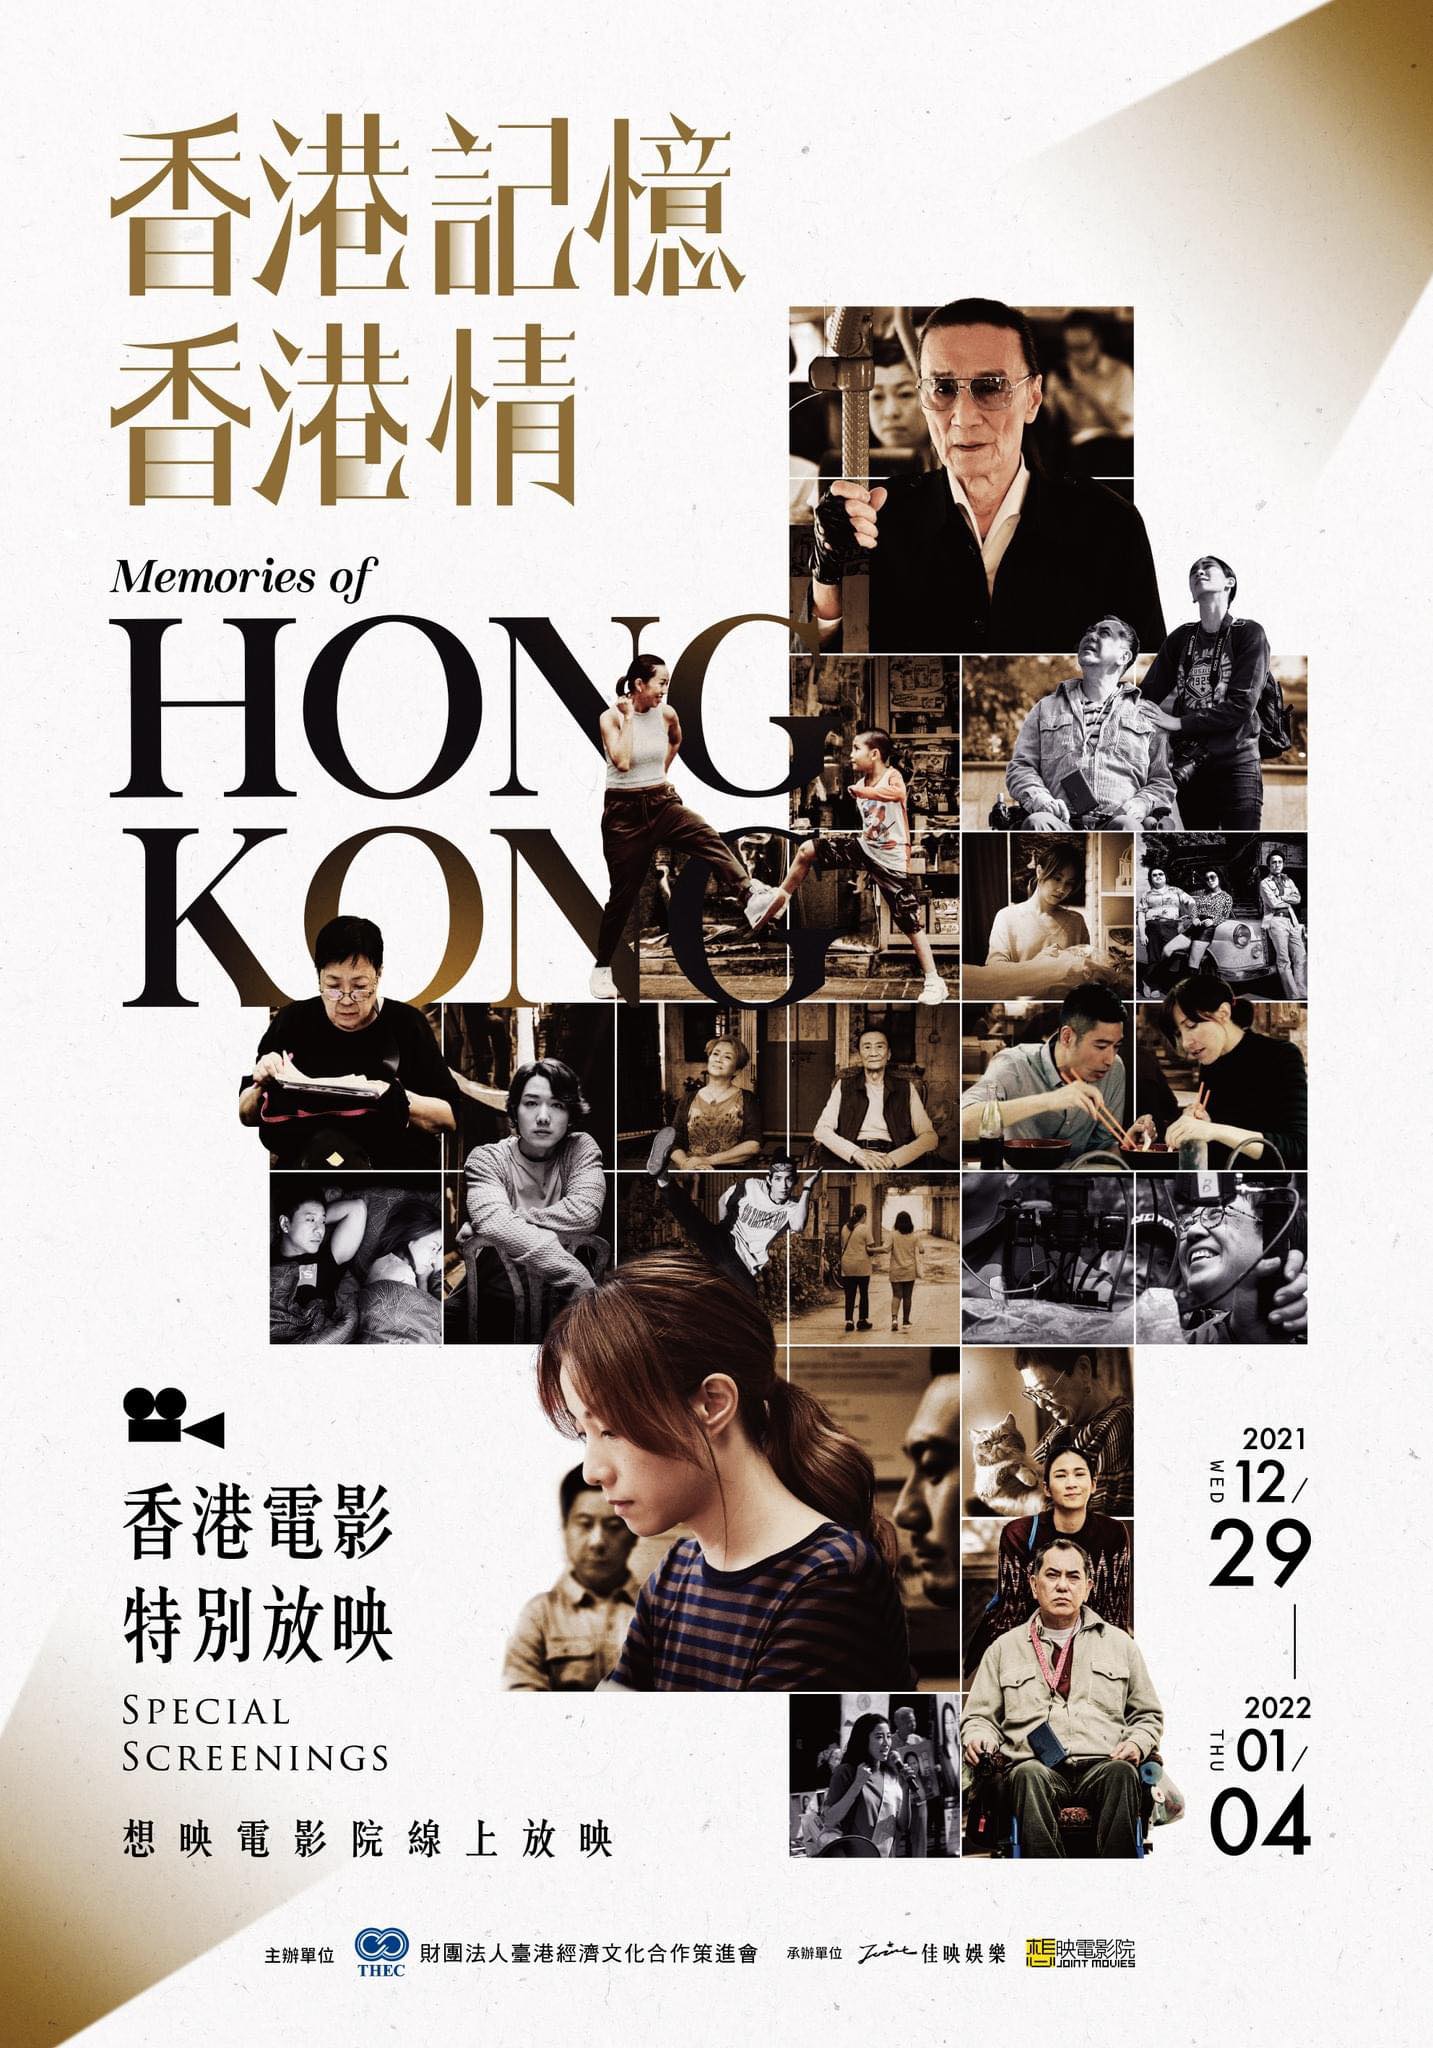 「香港記憶香港情」影展 12月29日免費線上播影